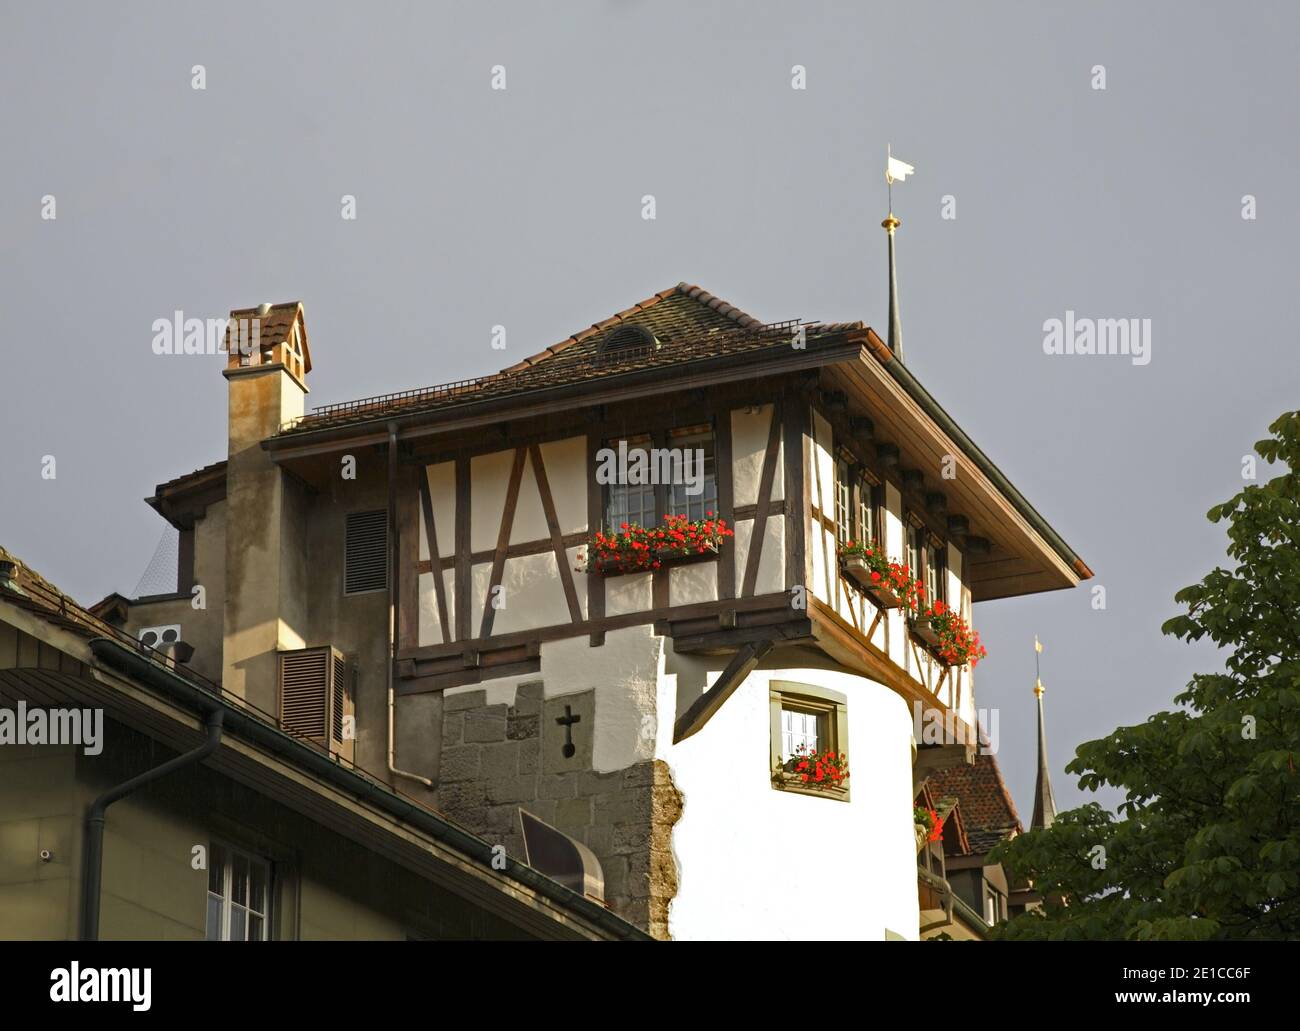 Dutch tower at Waisenhausplatz (Orphanage Plaza) in Bern. Switzerland Stock Photo